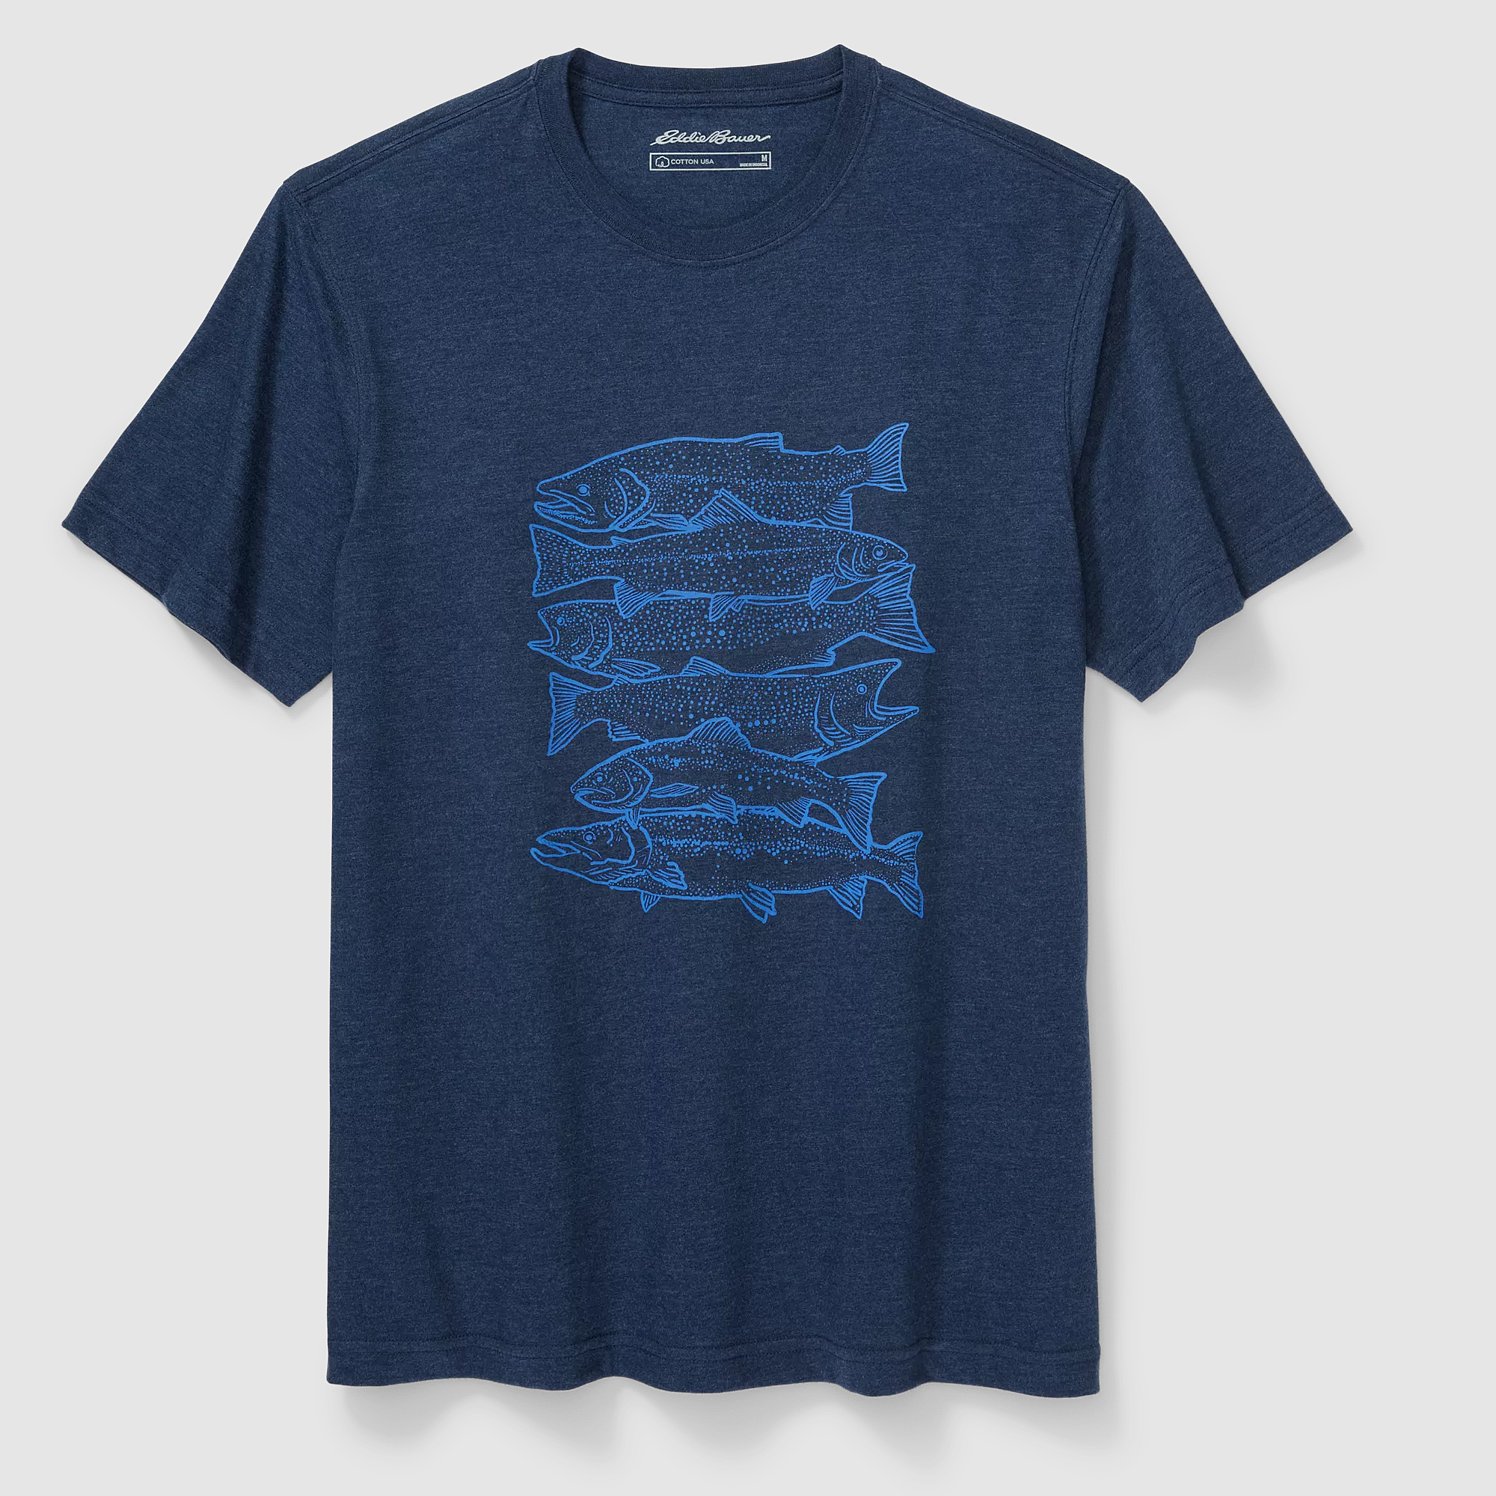 Eddie Bauer Graphic T-Shirt - Reel 'Em in - Heather Indigo - Size S